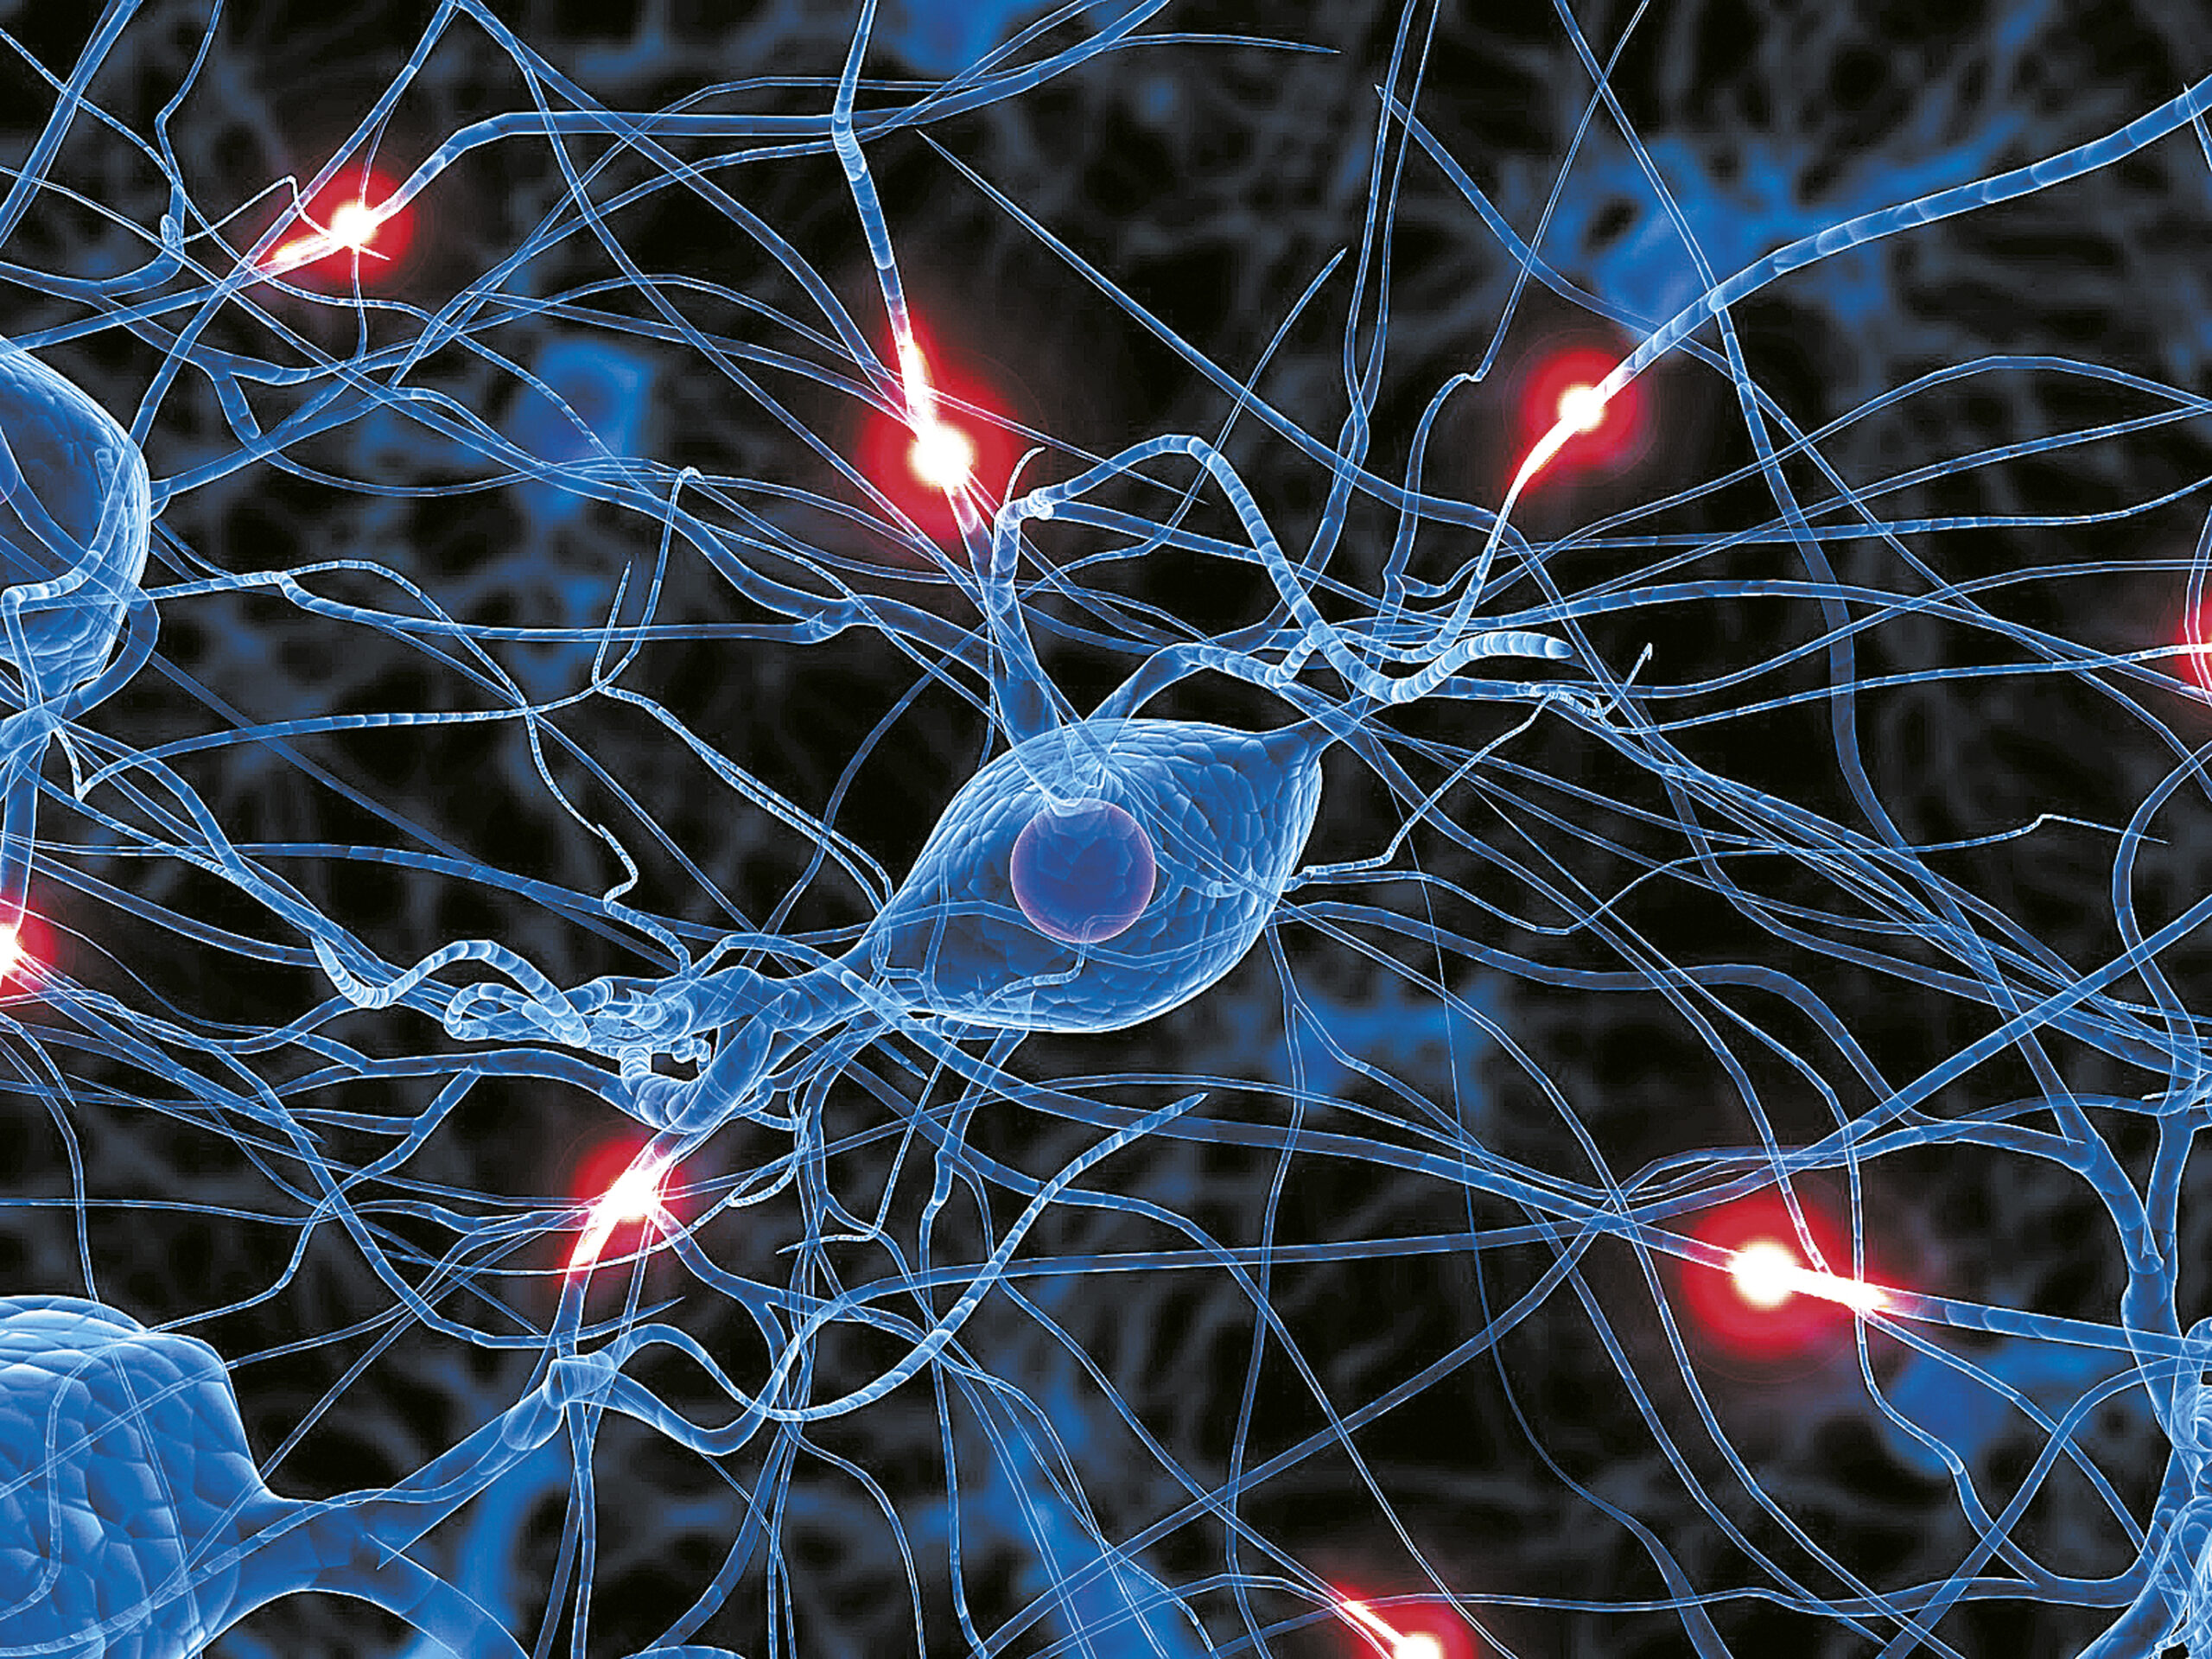 300 νευρώνες εντοπίζονται στον “χάρτη” καλωδίωσης του εγκεφάλου